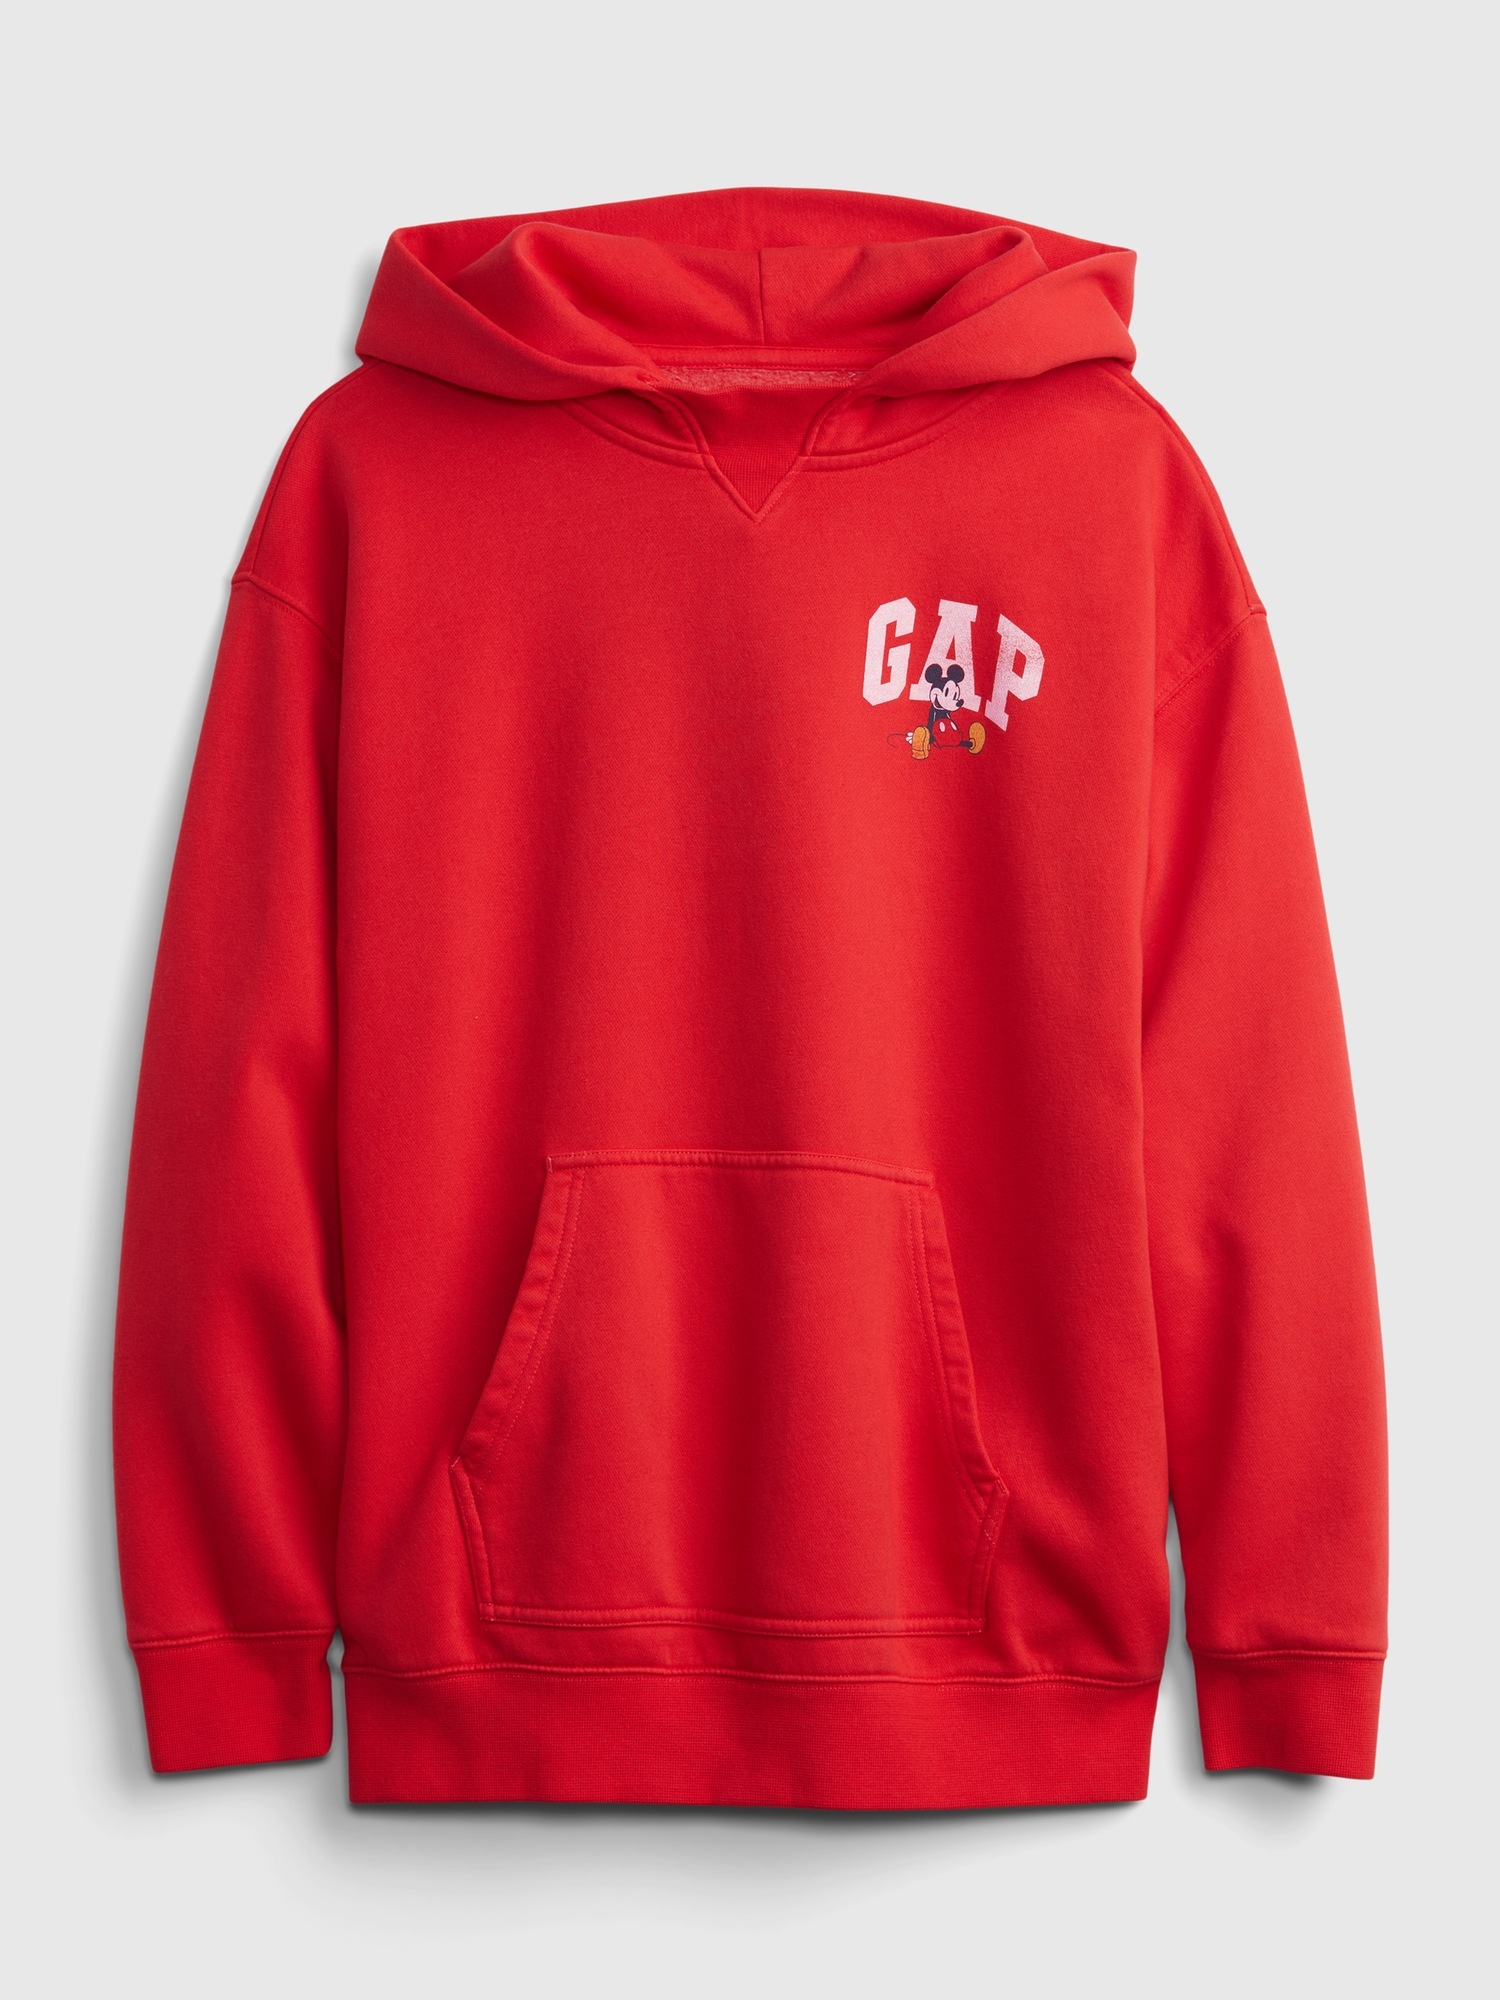 Gap x Disney Teen Graphic Hoodie | Gap